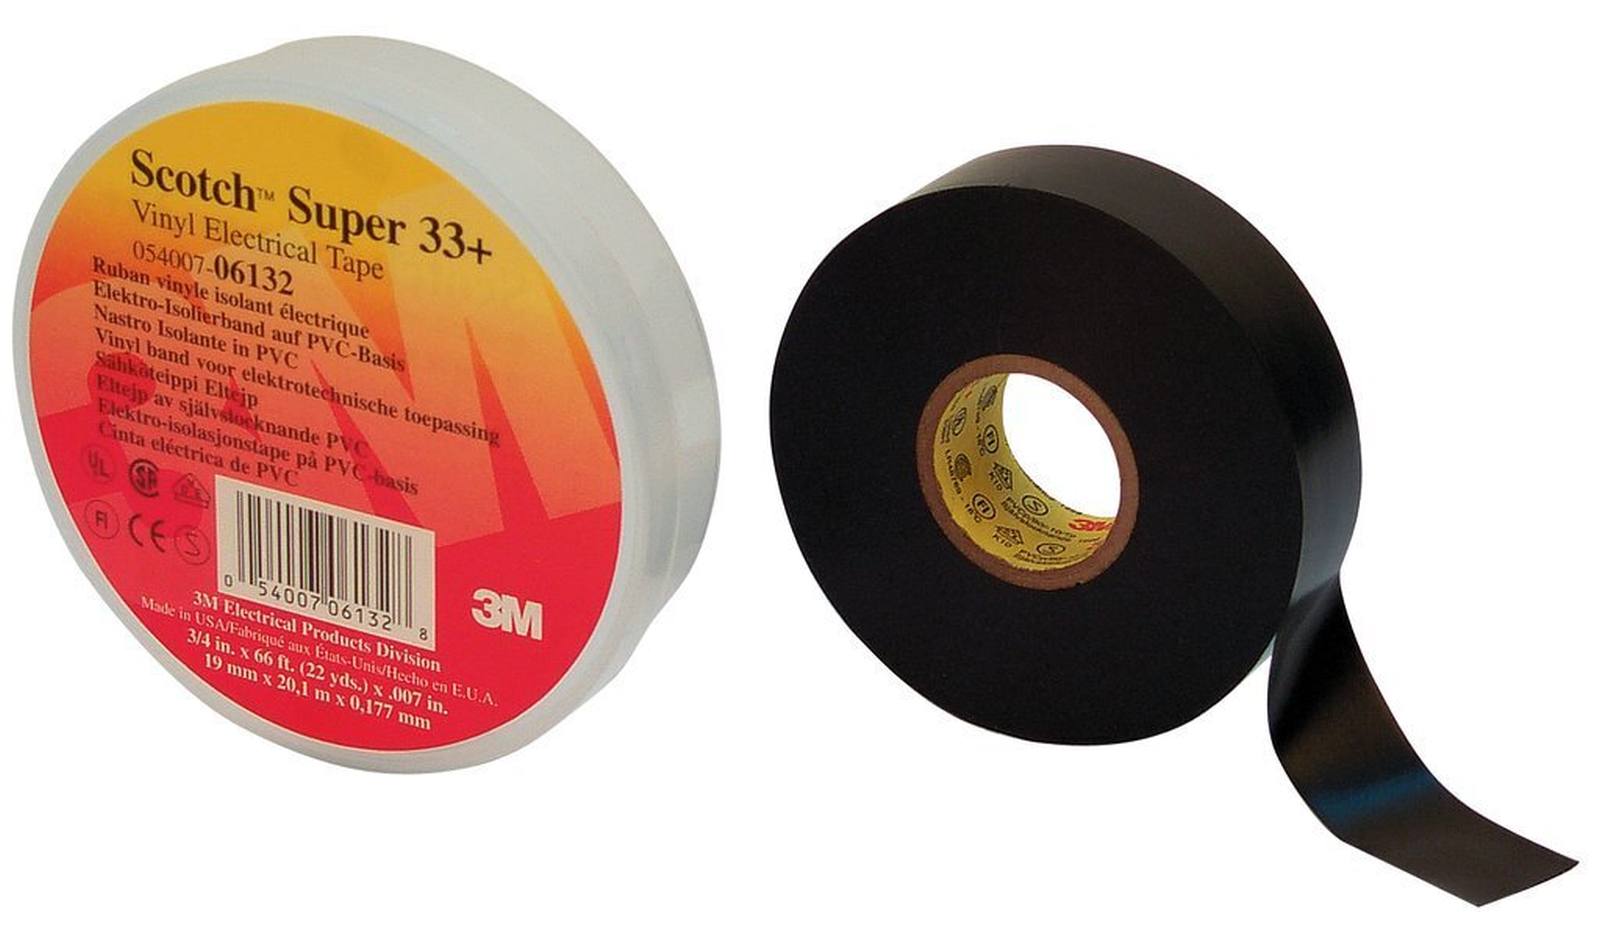 3M Ruban isolant électrique vinyle Super 33+ dechch, noir, 50 mm x 33 m, 0,18mm